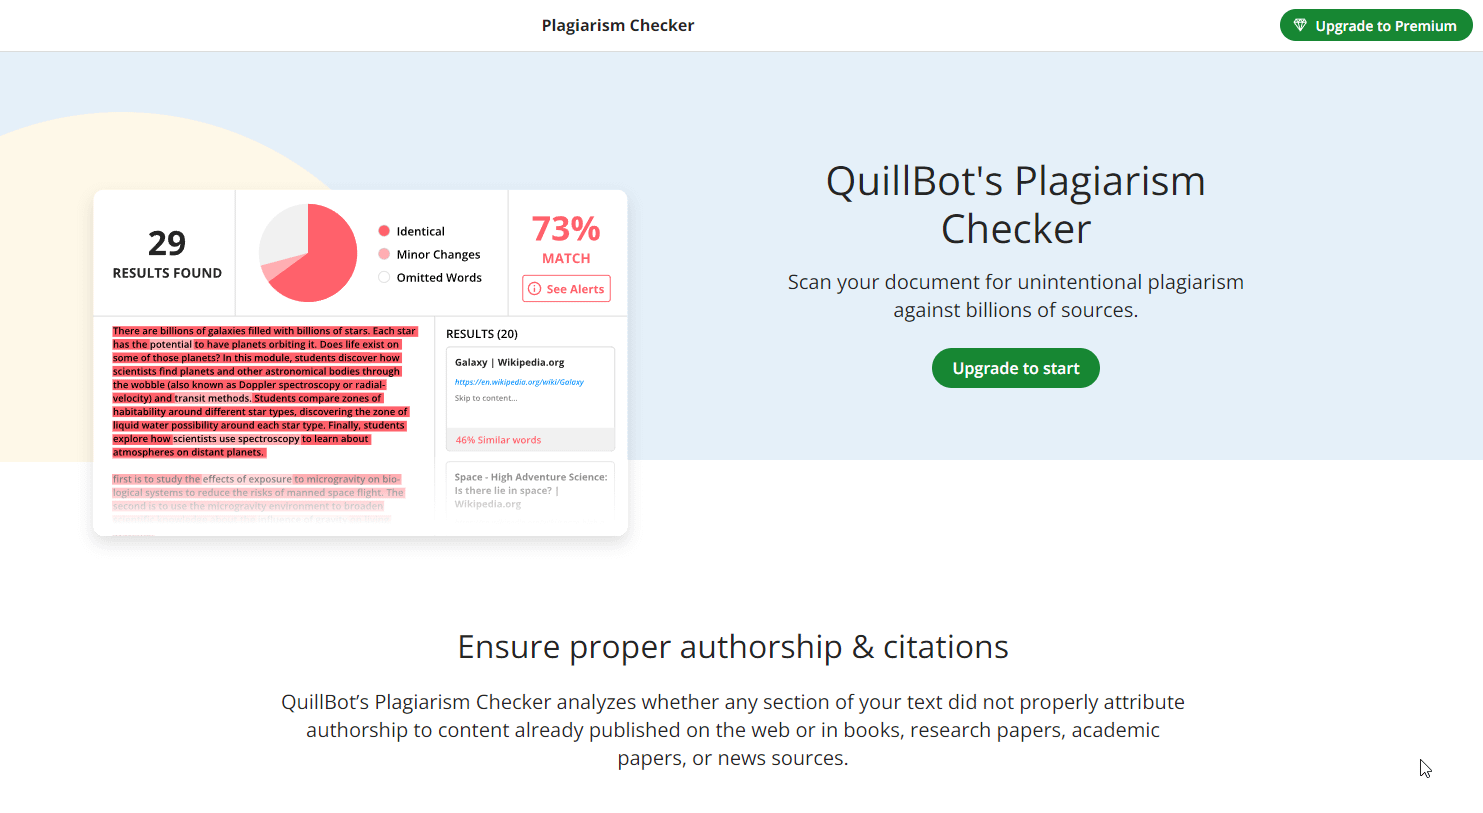 QuillBot Plagiarism Checker